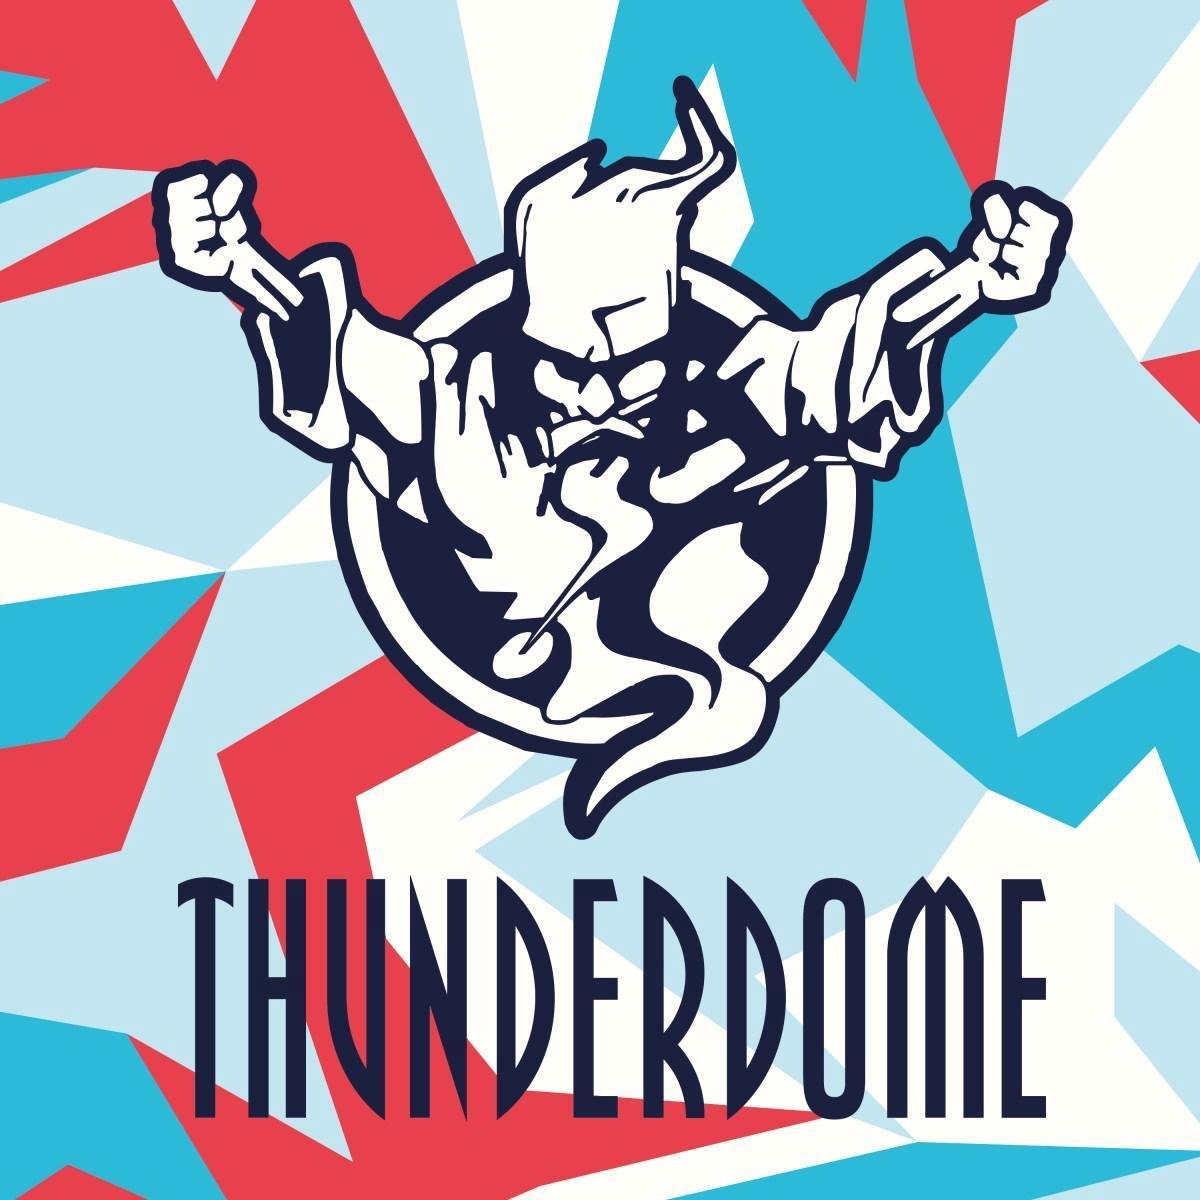 Thunderdome 2019 - Thunderdome